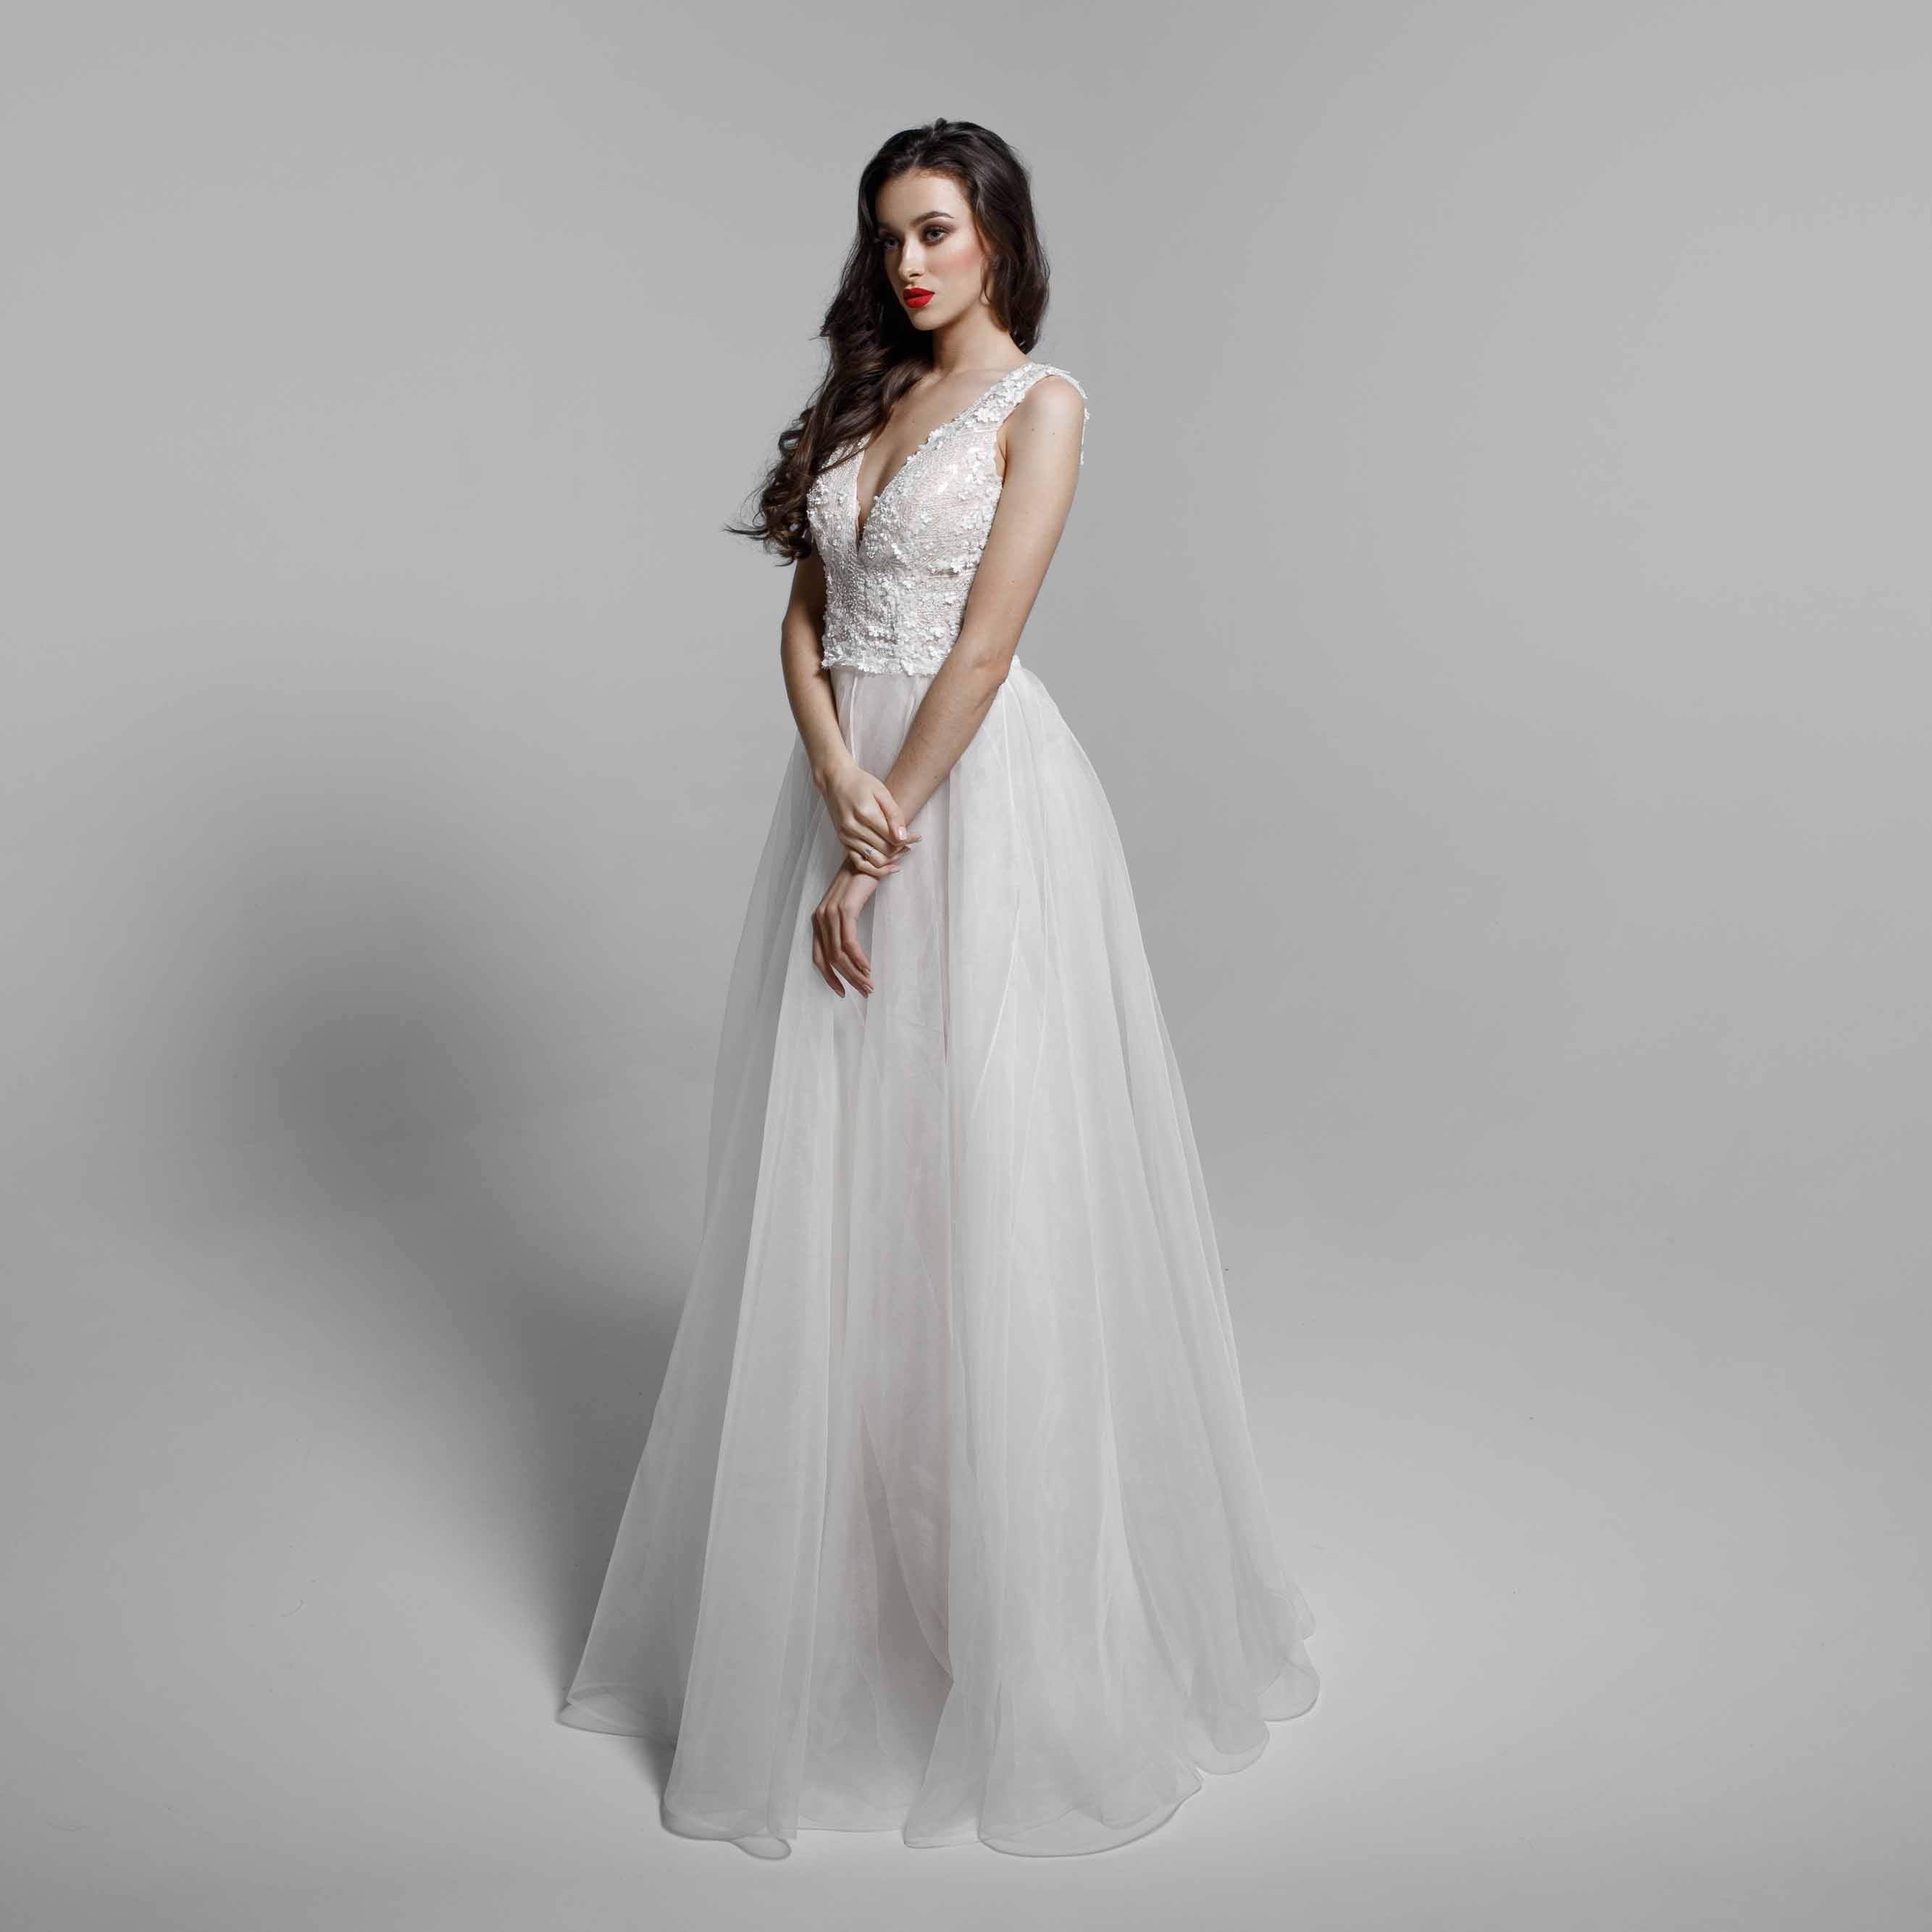 romantic quality wedding dress bliss gown.jpg__PID:6134b612-62eb-4c95-992d-eb84ae712fb3